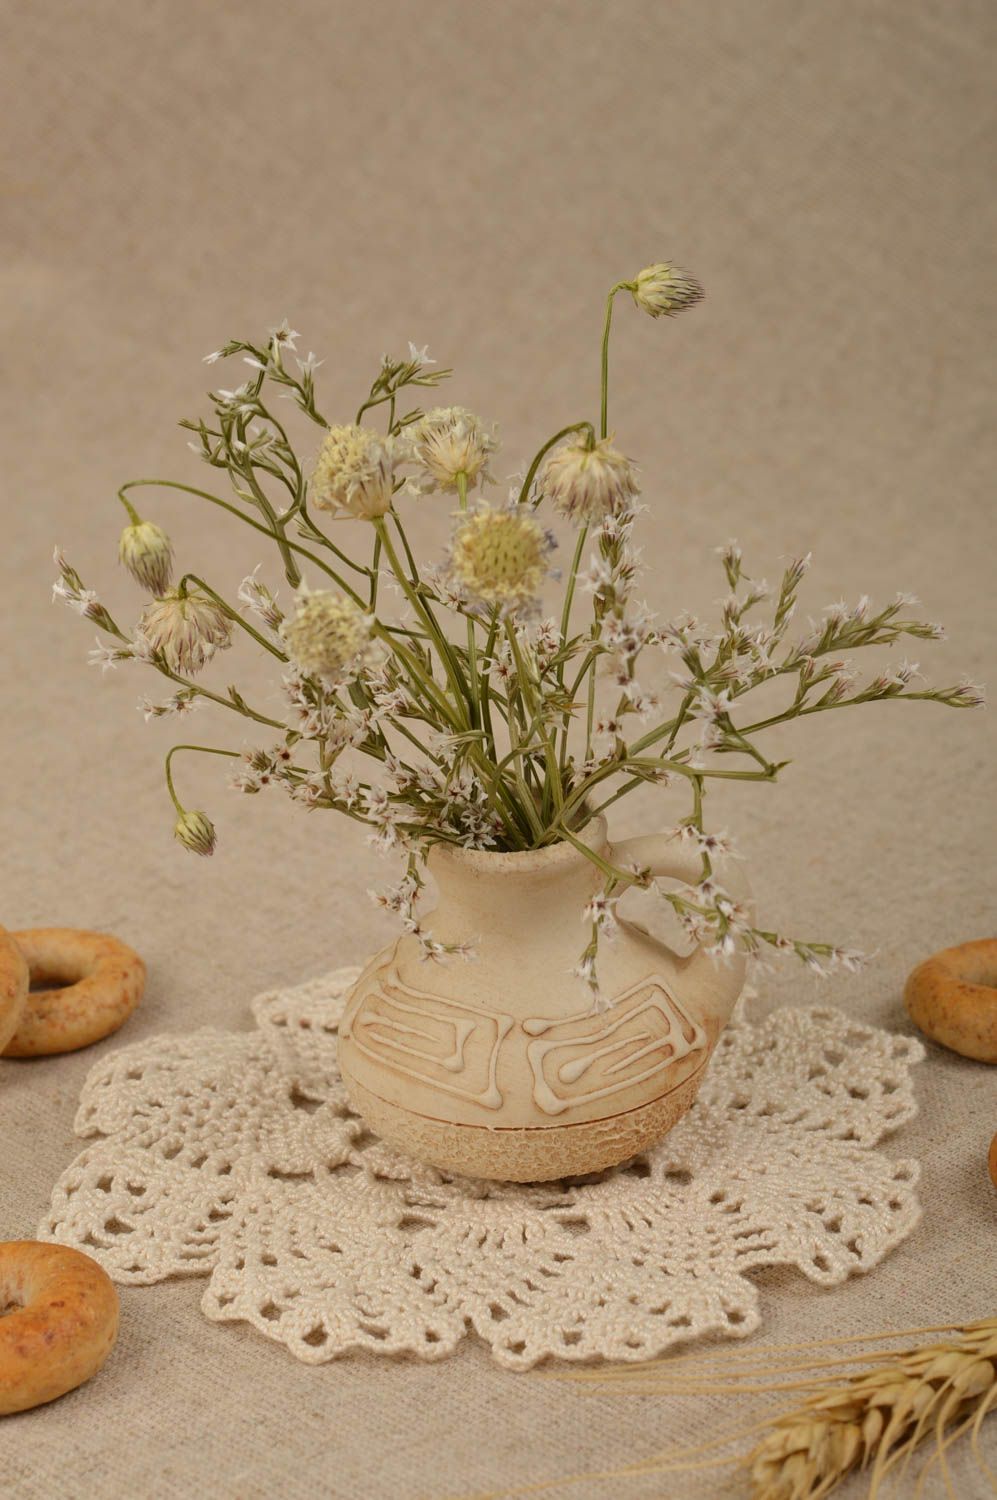 Handmade napkin crocheted napkin decor ideas kitchen accessory table decorative photo 3